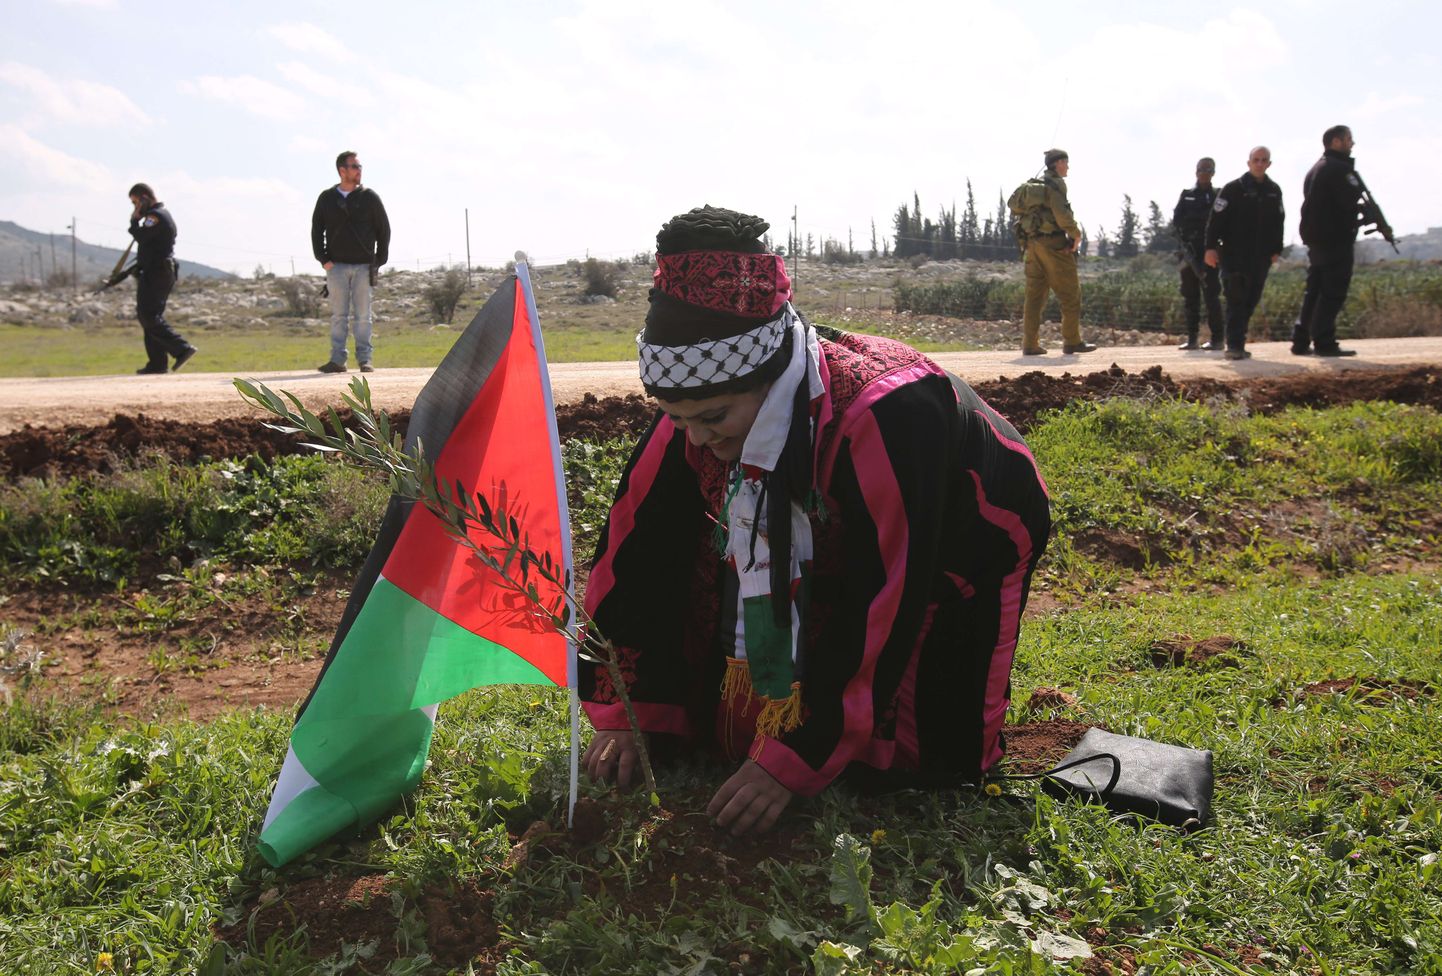 Ofra lähistel toimus täna palestiinlaste protestiavaldus - nad istutasid oliivipuid.